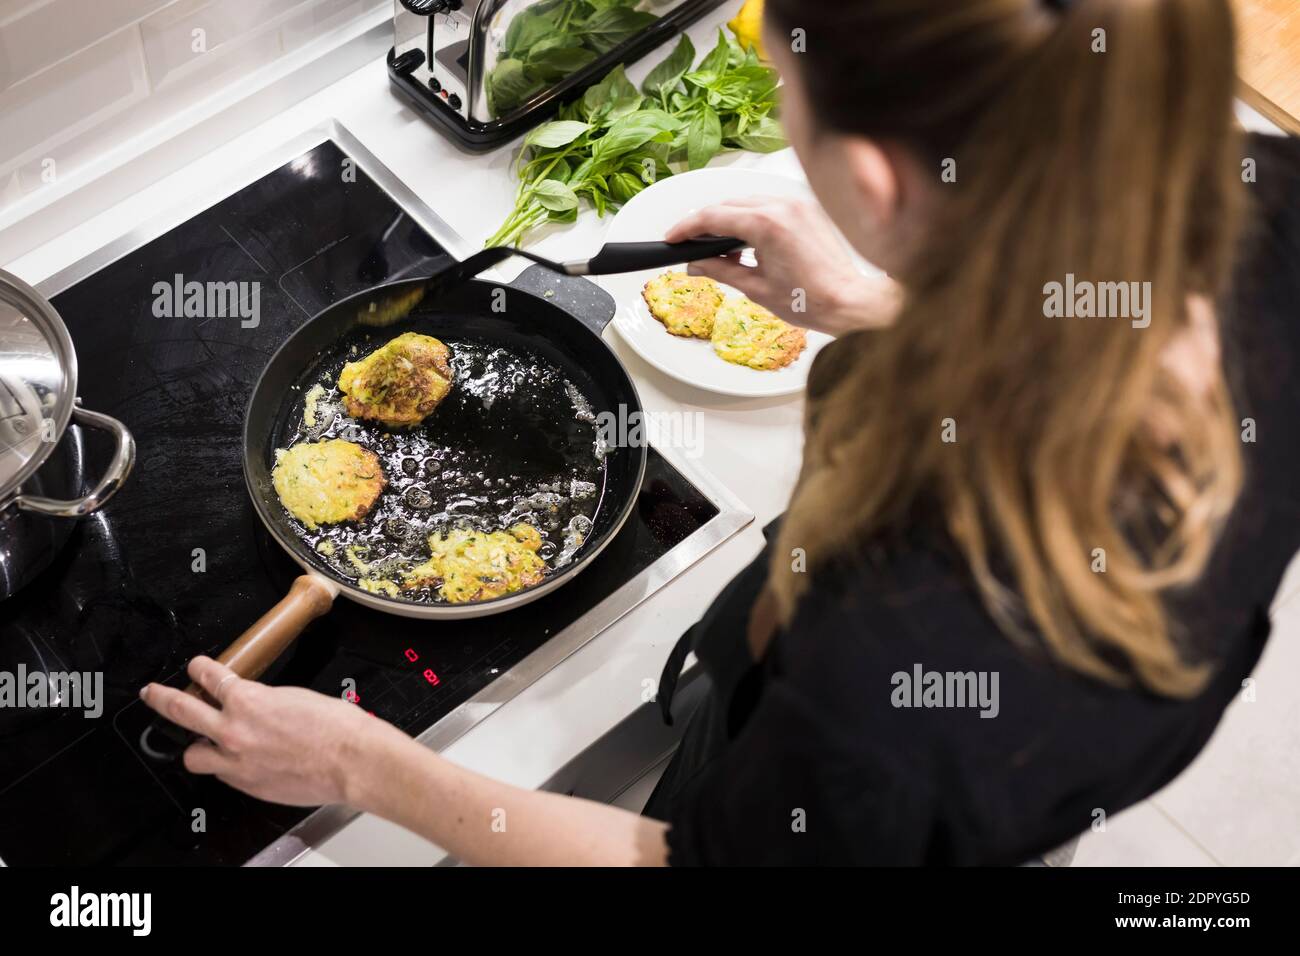 Junge charmante schwedische Frau, die zu Hause in ihrer Küche kocht und gesundes mediterranes Essen für ihre Familie zubereitet. Junge Lebensmittel-Blogger tun Essen vorbereiten Stockfoto